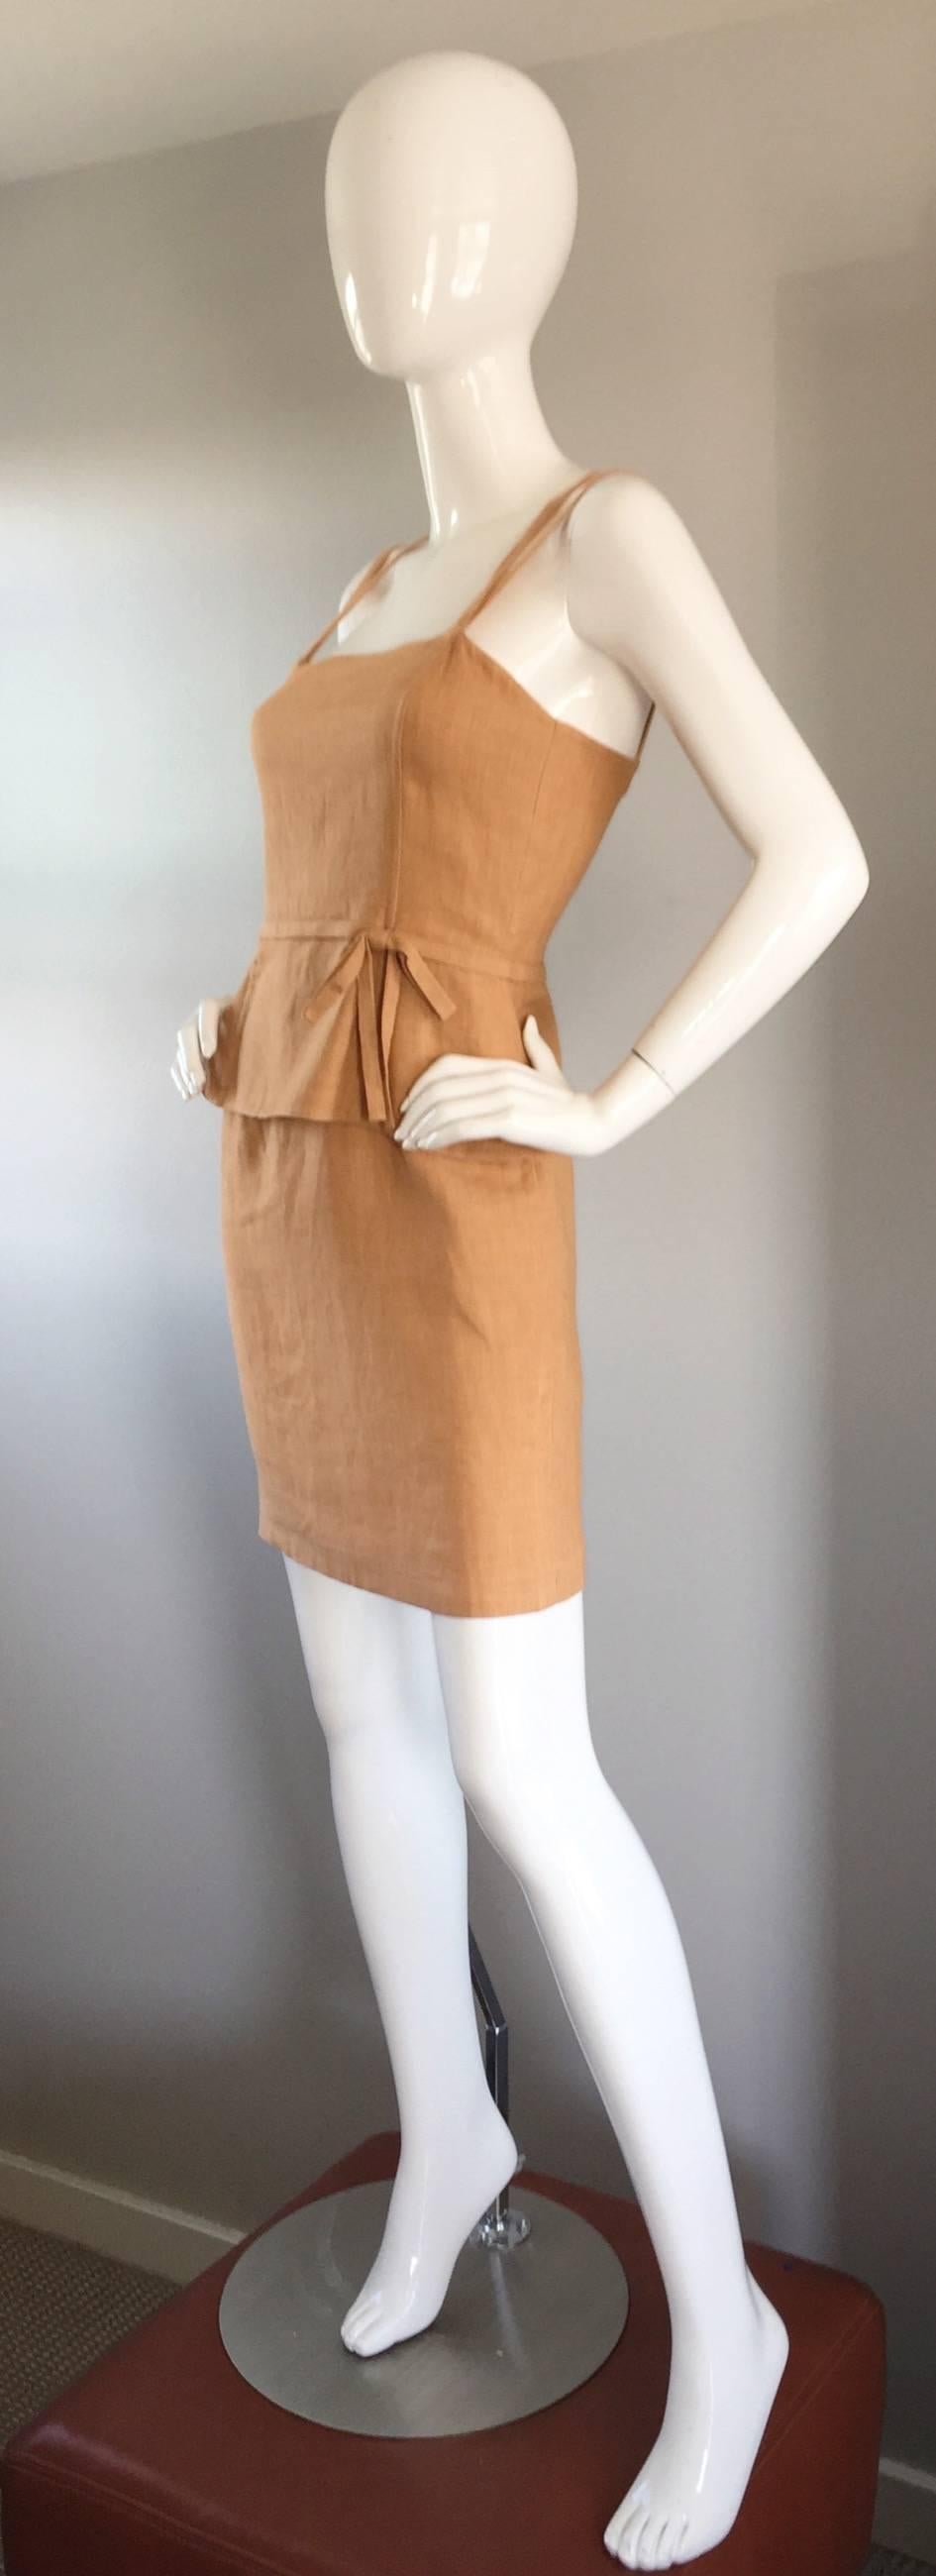 Bill Blass Vintage Terra Cotta Tan Linen Dress w/ Bow and Criss Cross Back  1